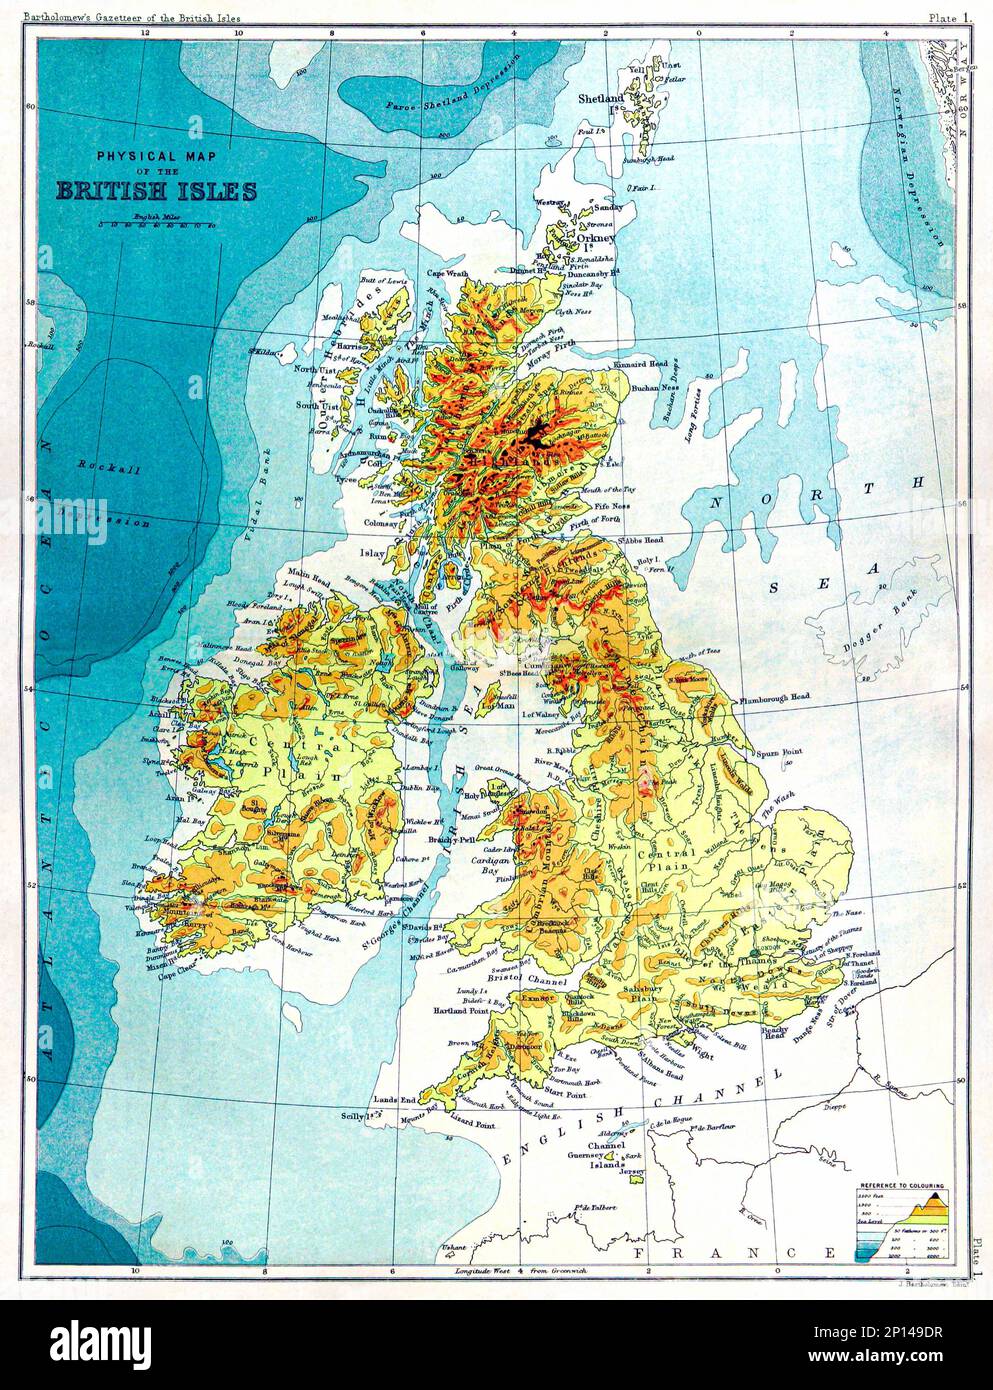 Gazetteer de las Islas Británicas, estadístico y topográfico (1887) por John Bartholomew. Original de la Biblioteca Británica. Foto de stock